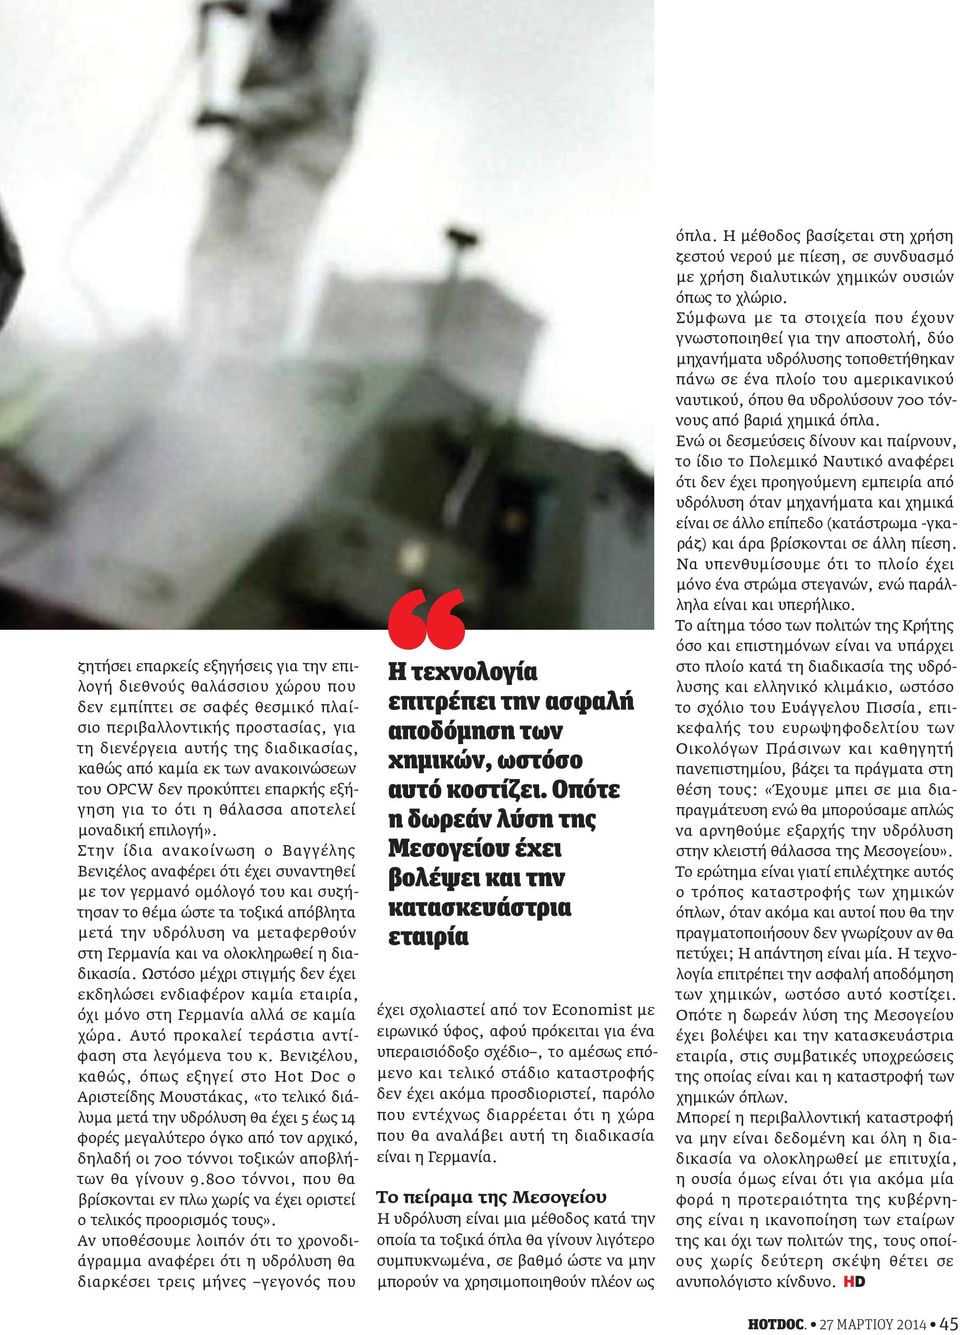 Στην ίδια ανακοίνωση ο Βαγγέλης Βενιζέλος αναφέρει ότι έχει συναντηθεί με τον γερμανό ομόλογό του και συζήτησαν το θέμα ώστε τα τοξικά απόβλητα μετά την υδρόλυση να μεταφερθούν στη Γερμανία και να